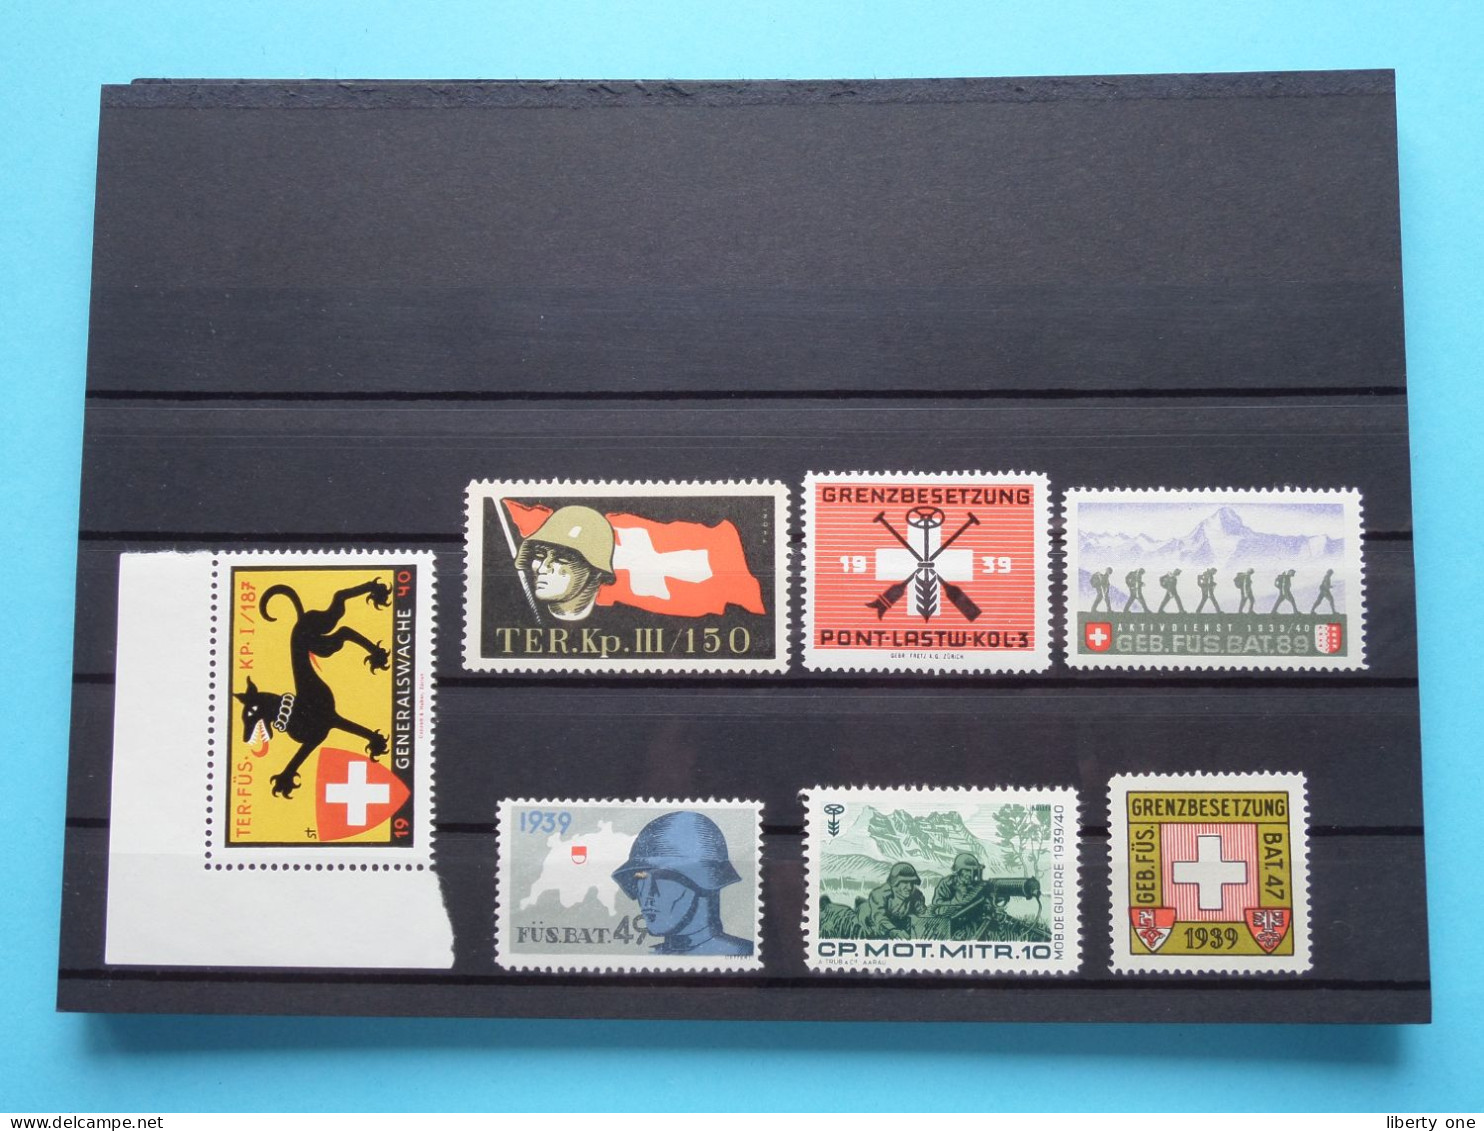 Lotje >> Sluitzegel Timbres-Vignettes Picture Stamp Verschlussmarken ( What You See Is What You Get ) La SUISSE ! - Cachets Généralité